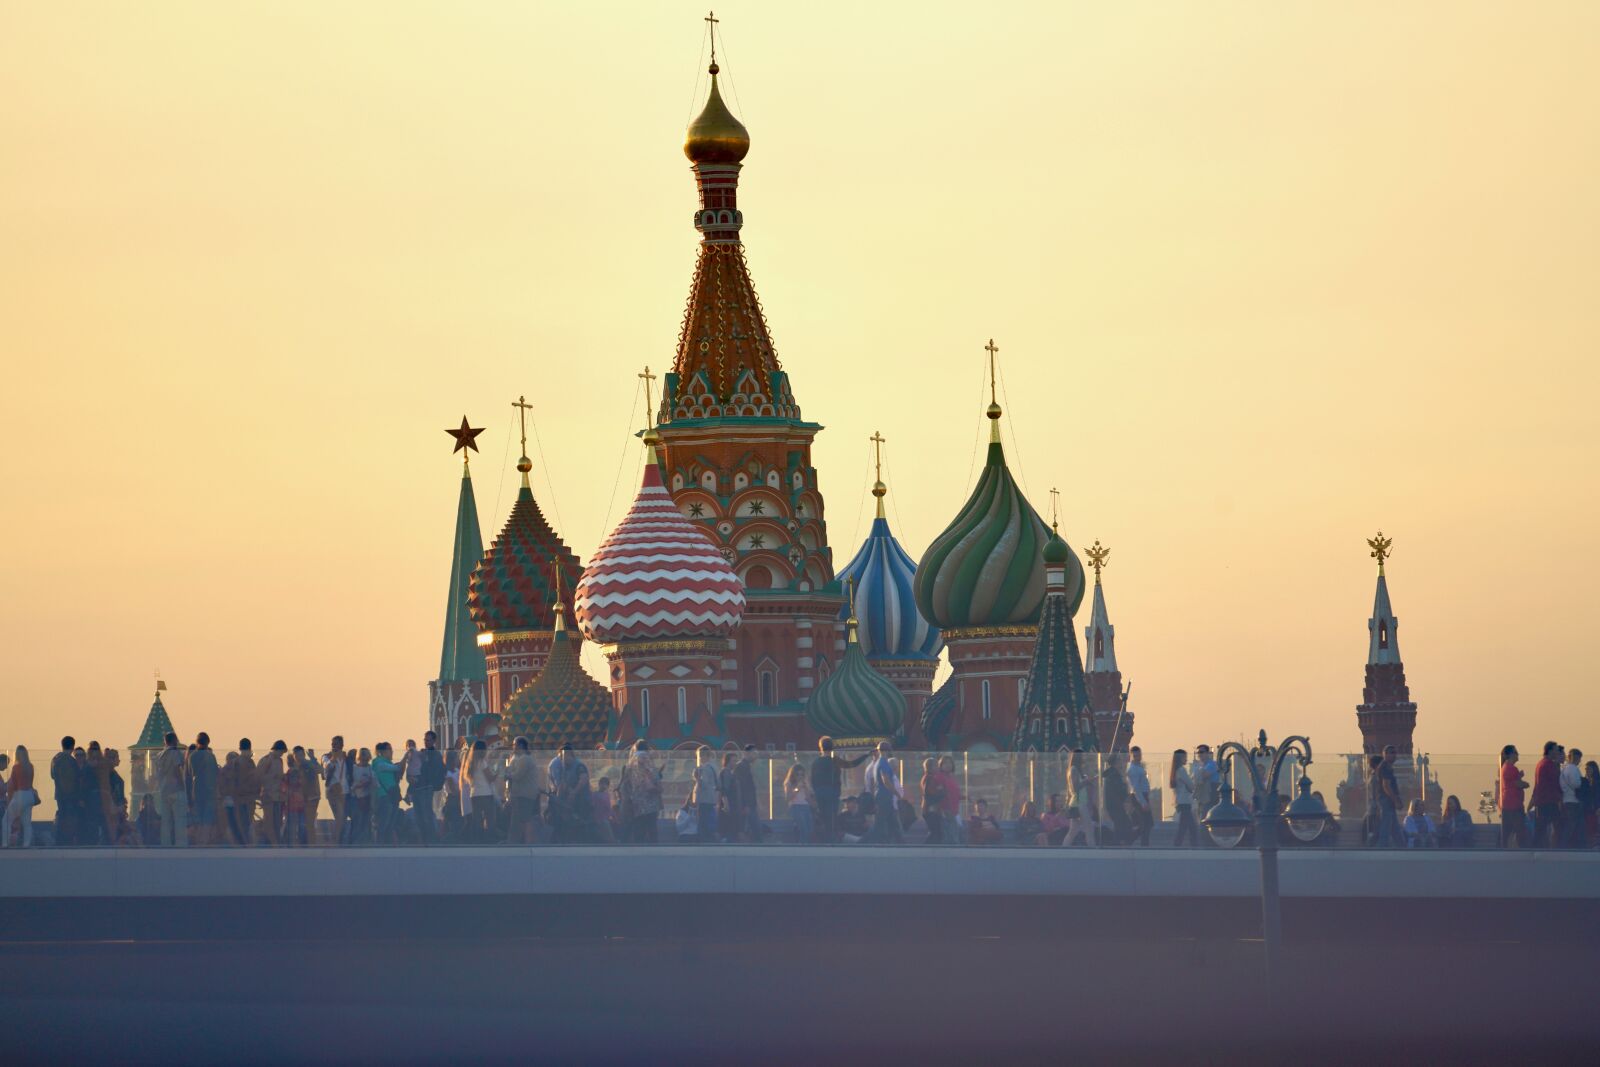 Sony a7R III sample photo. Moscow, kremlin, saint basil's photography